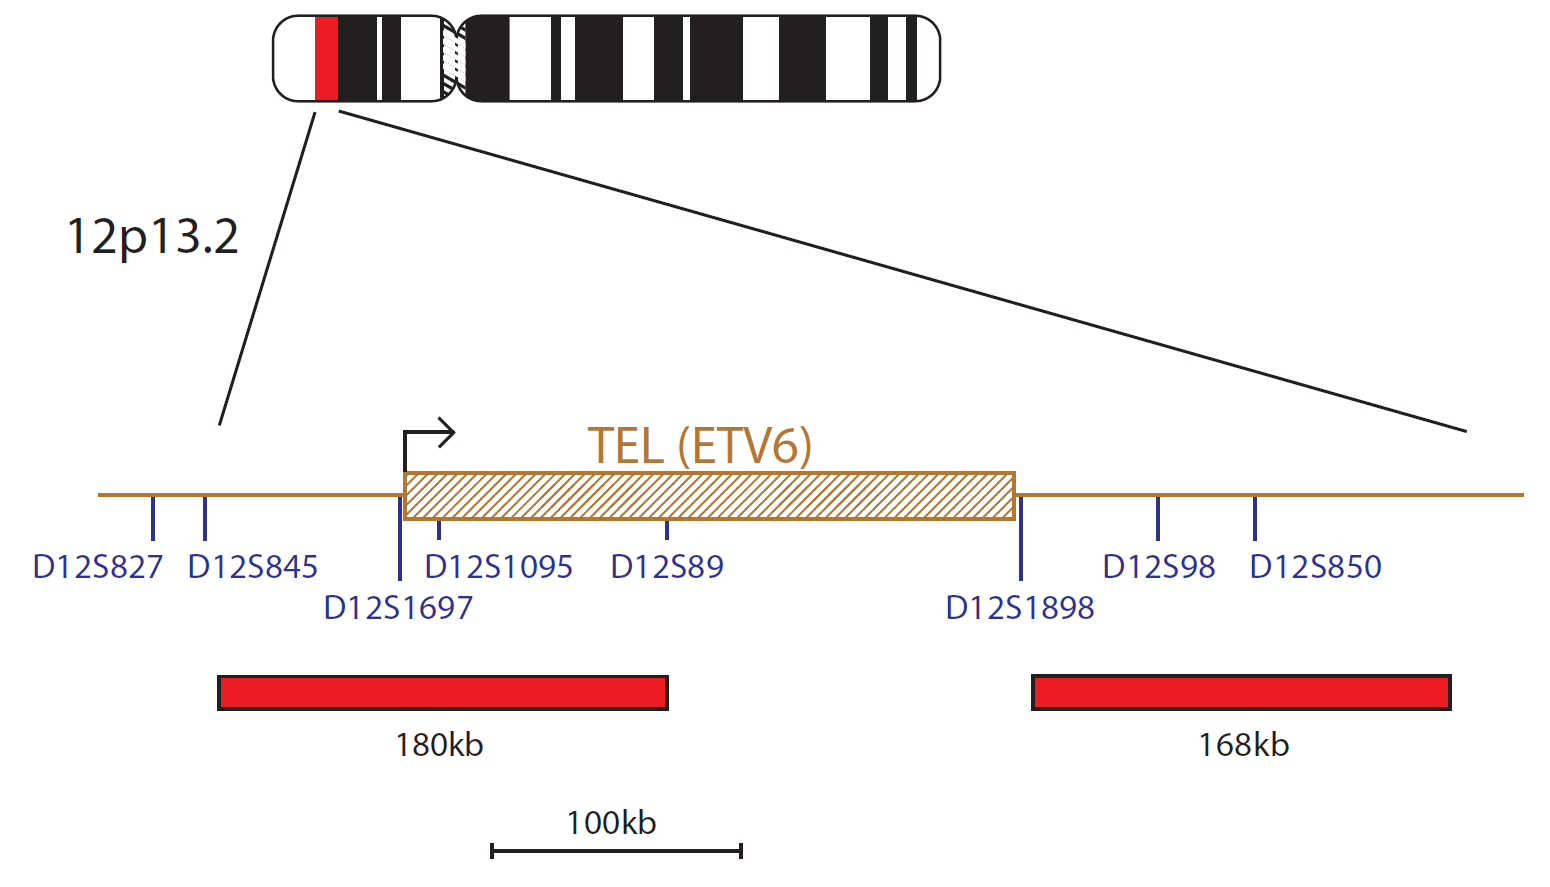 TEL/AML1 (ETV6 / RUNX1) Translocation